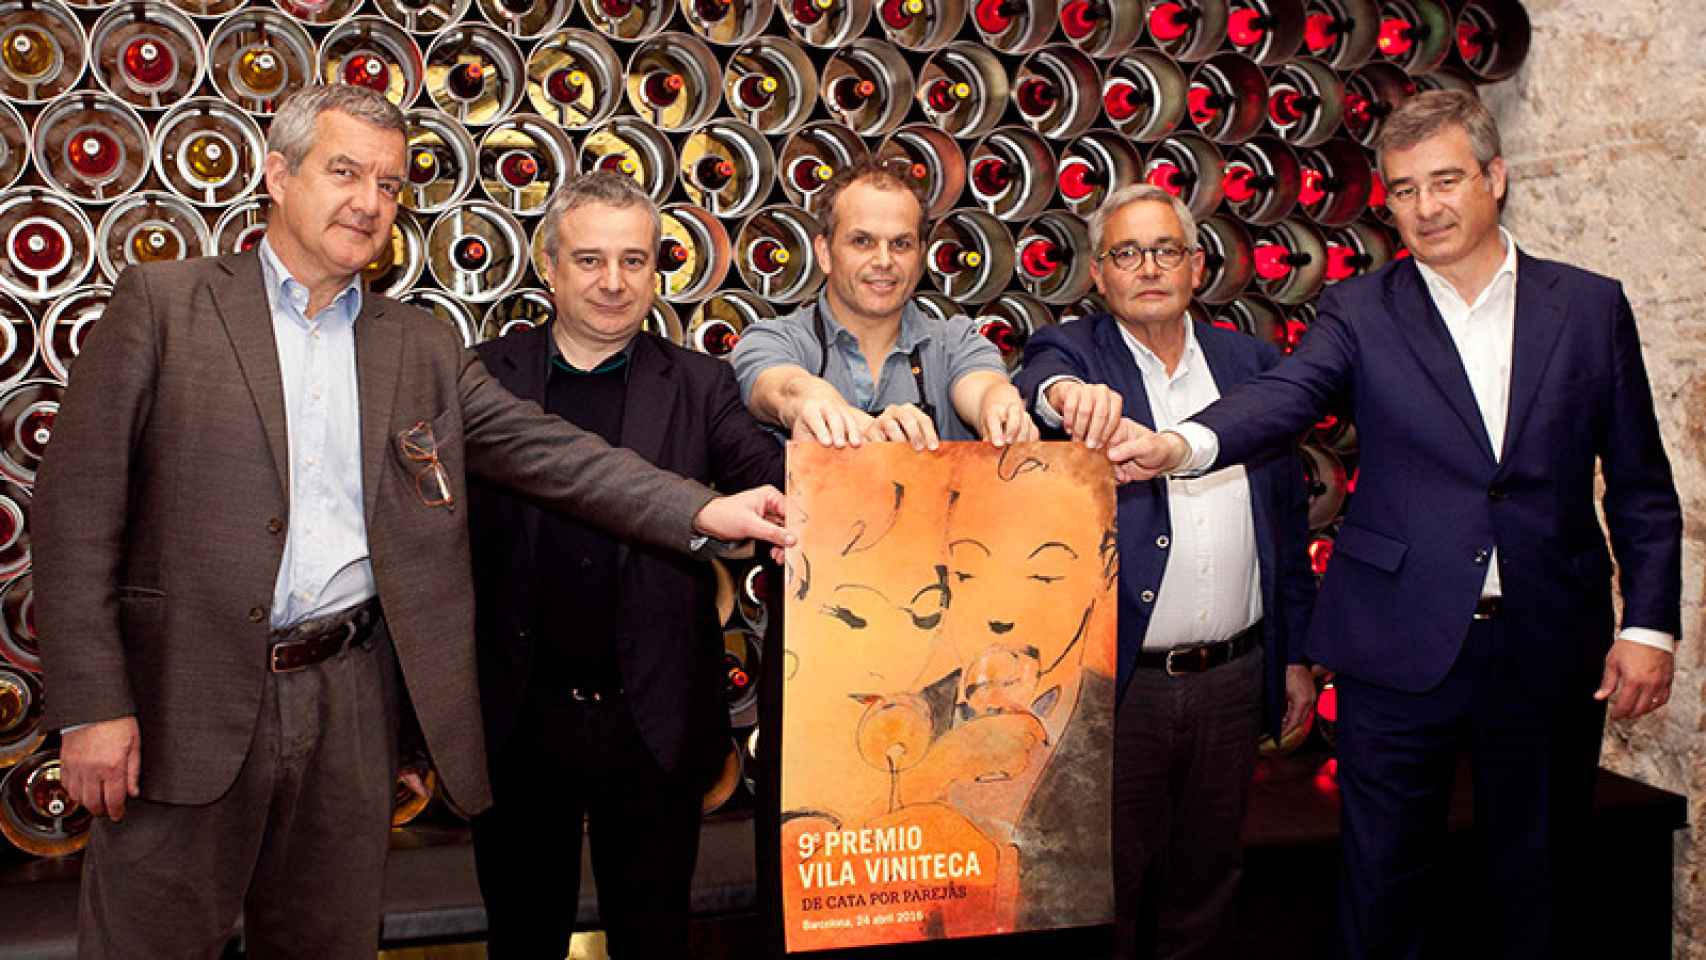 Perico Pastor, Quim Vila, Jordi Vilà, Siscu Martí y Jordi Segura el día de la presentación del concurso